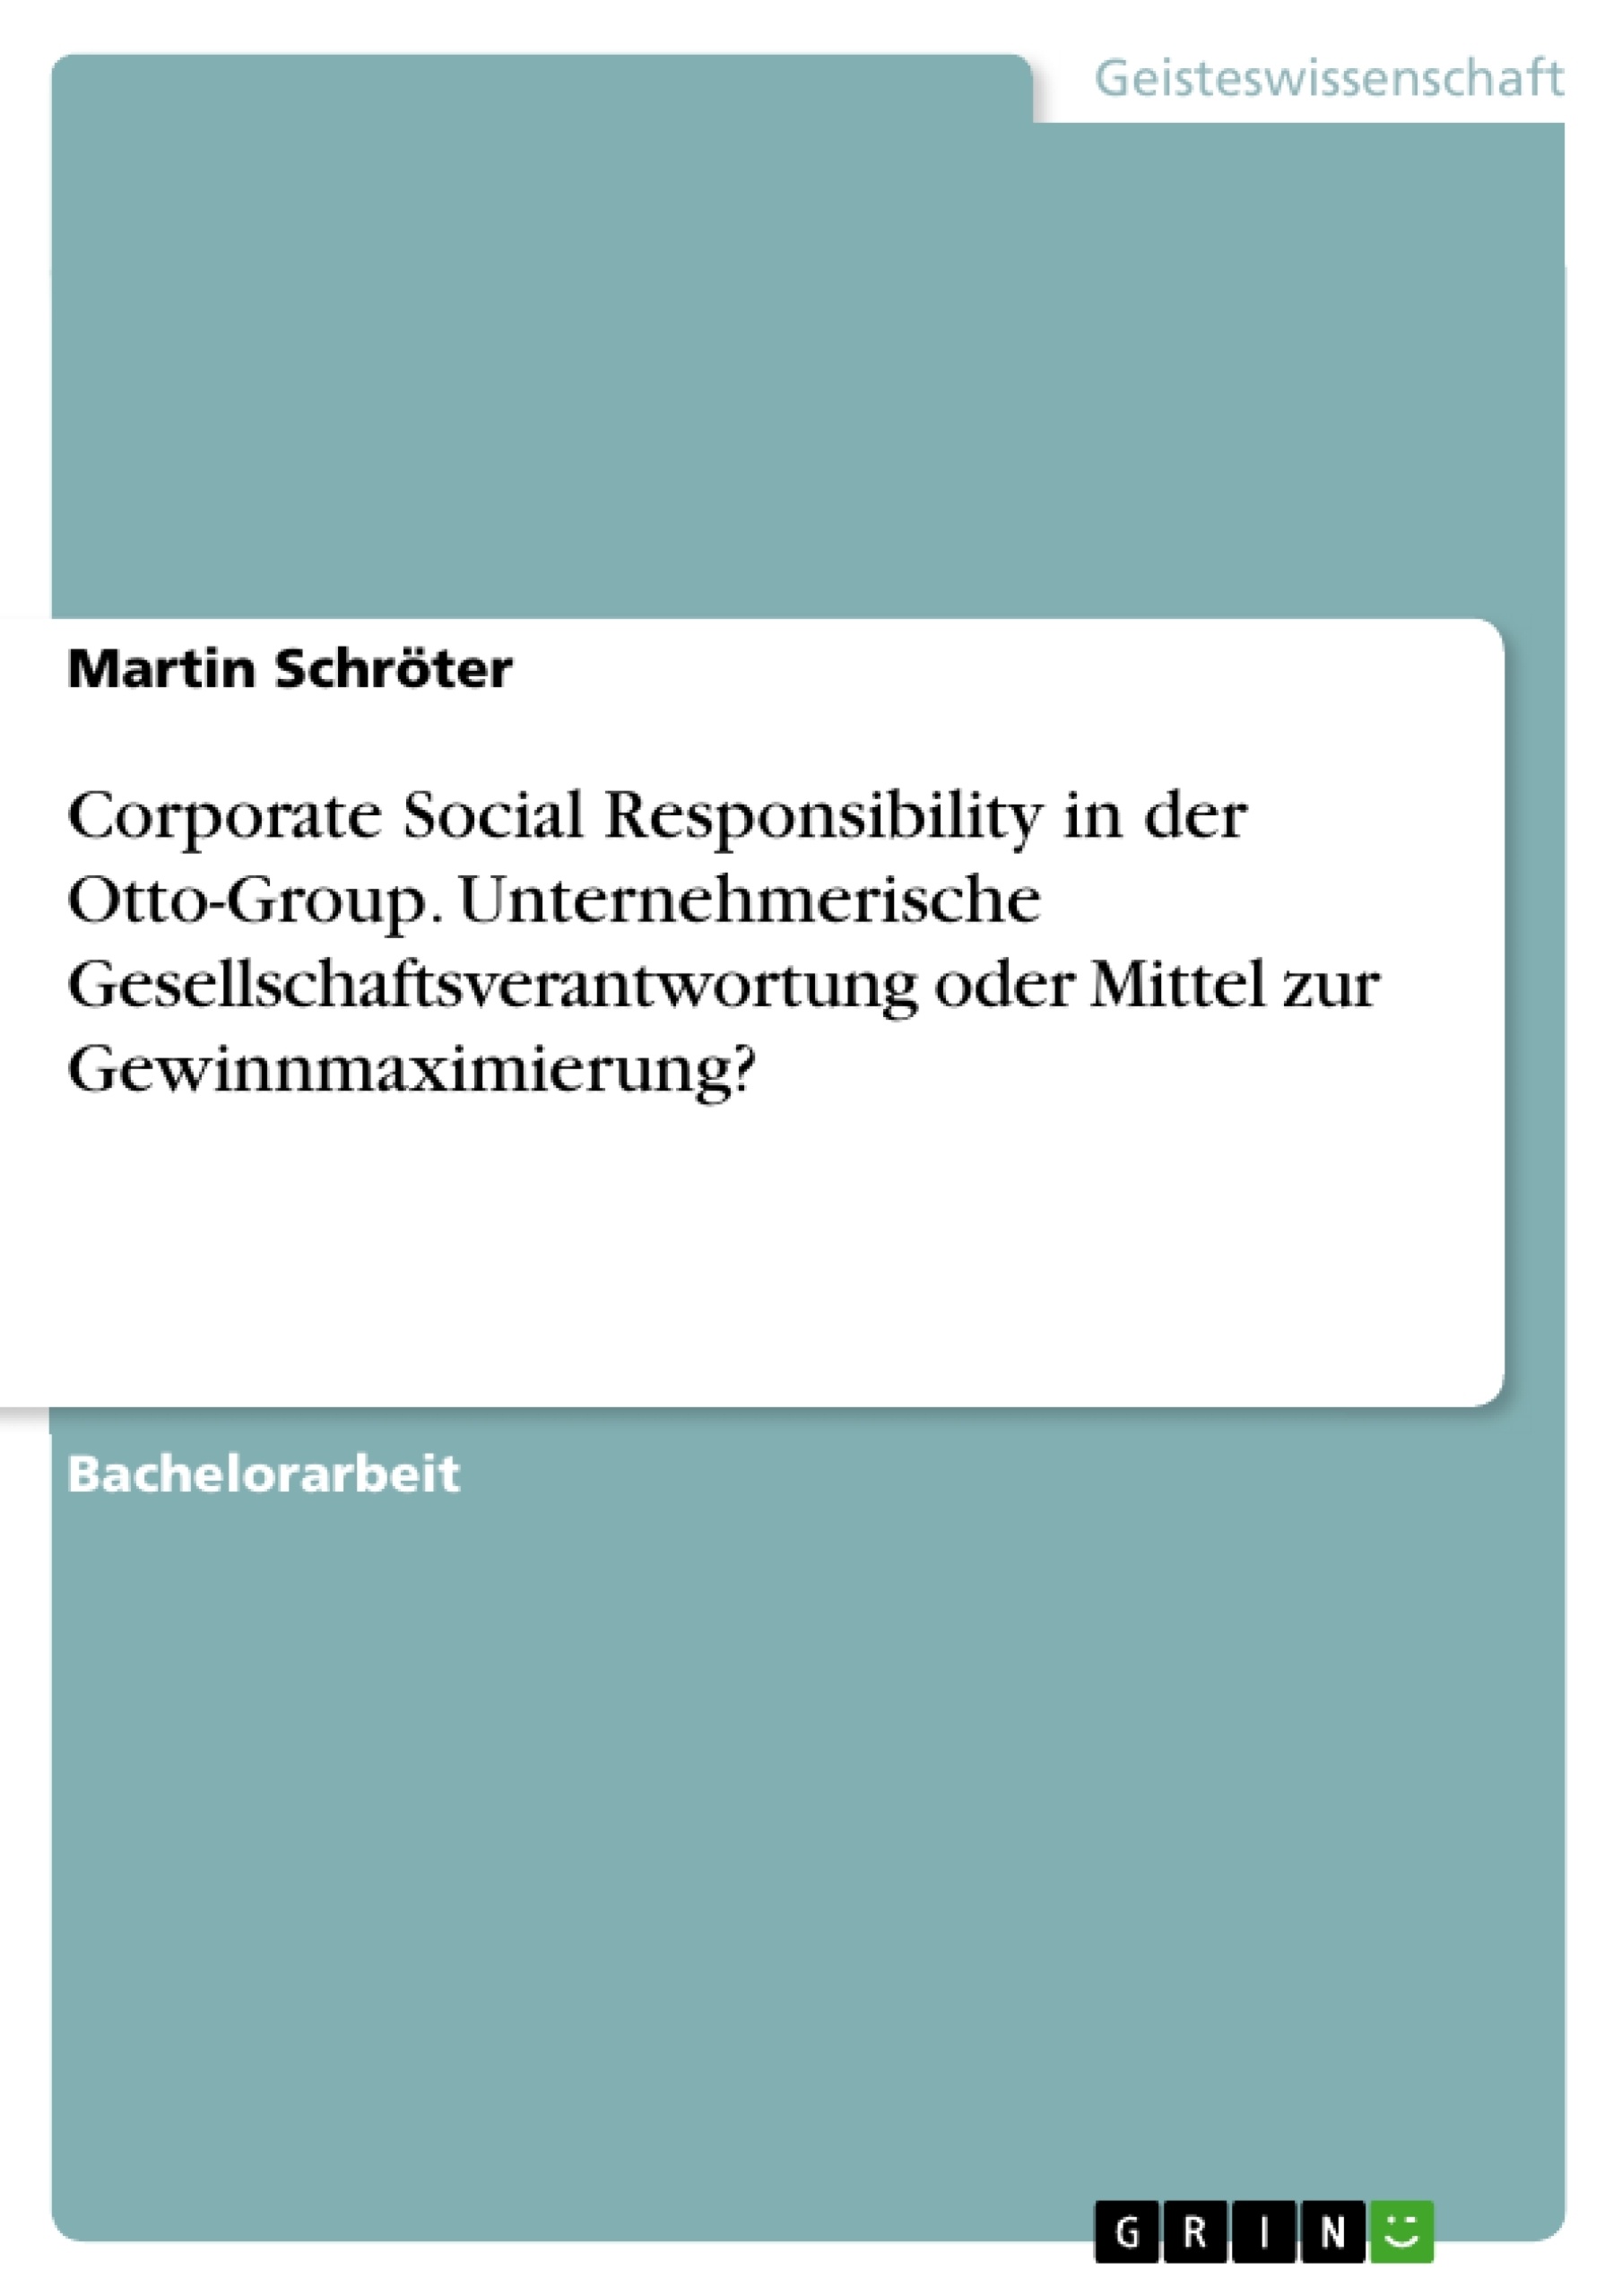 Title: Corporate Social Responsibility in der Otto-Group. Unternehmerische Gesellschaftsverantwortung oder Mittel zur Gewinnmaximierung?